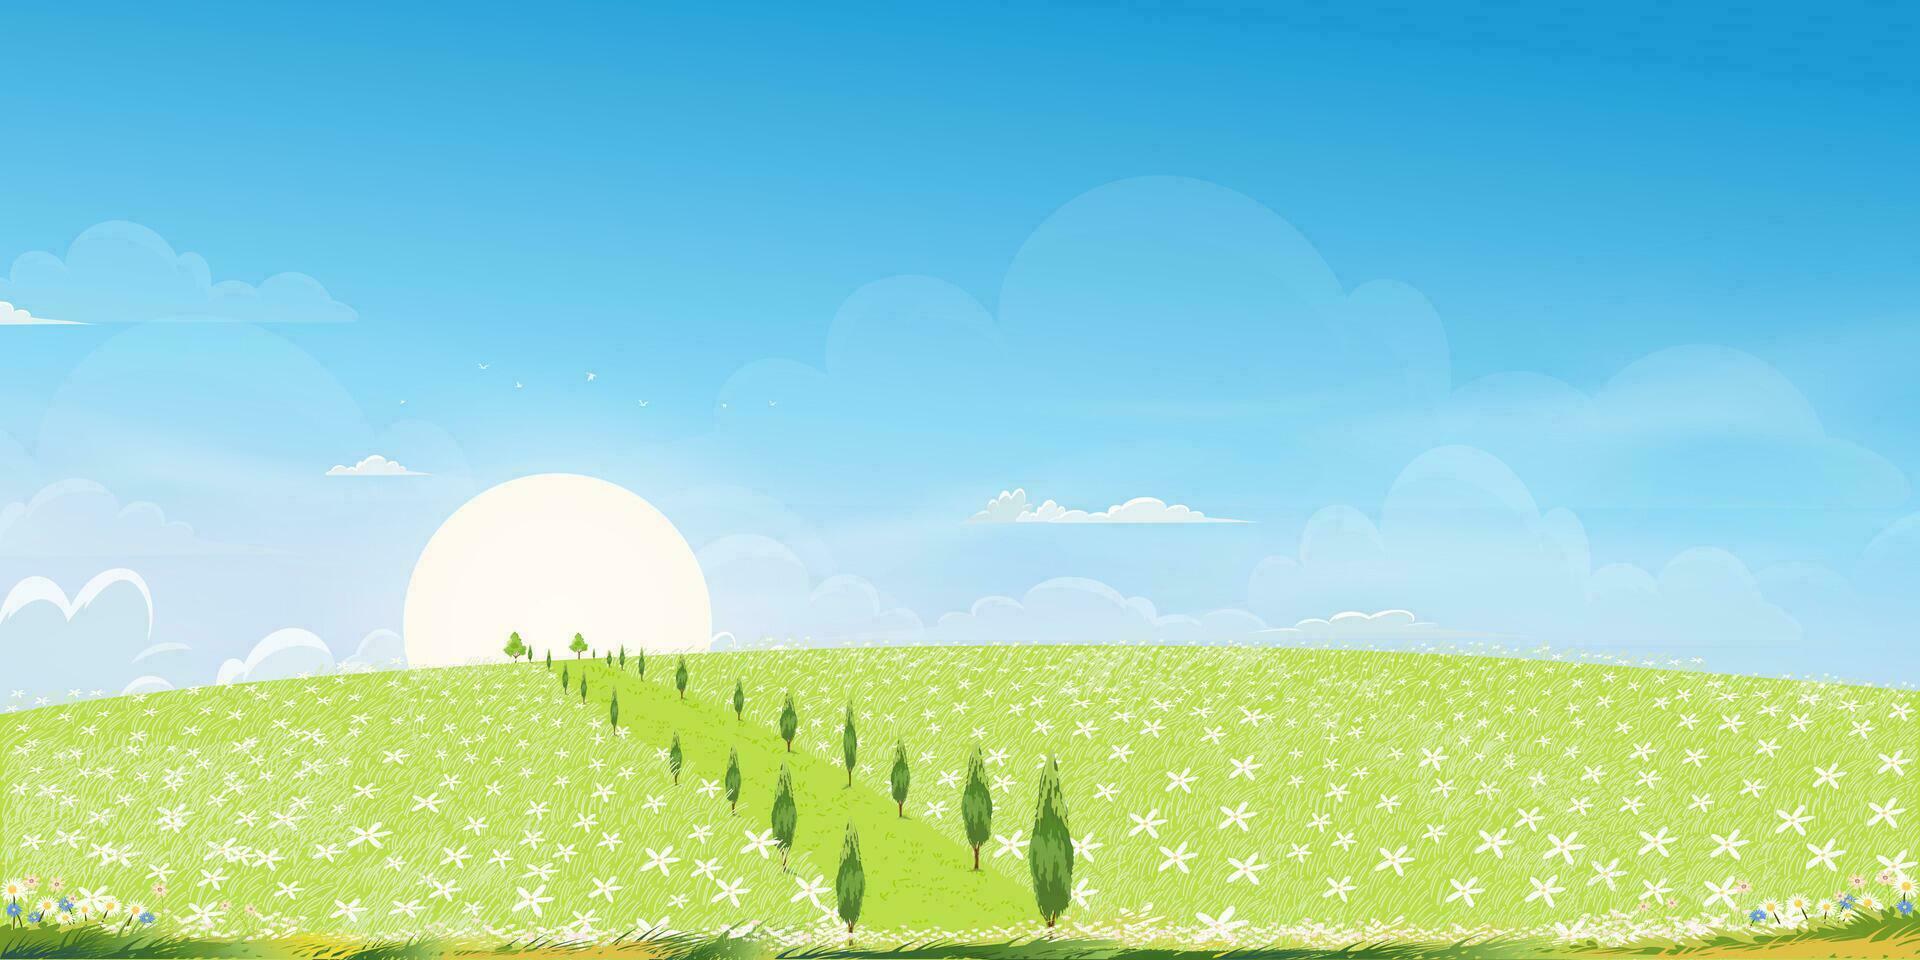 primavera antecedentes con blanco flor margarita campos paisaje en colinascon azul cielo y nubes, hermoso naturaleza verano rural con salvaje césped flores, dibujos animados vector ilustración fondo bandera